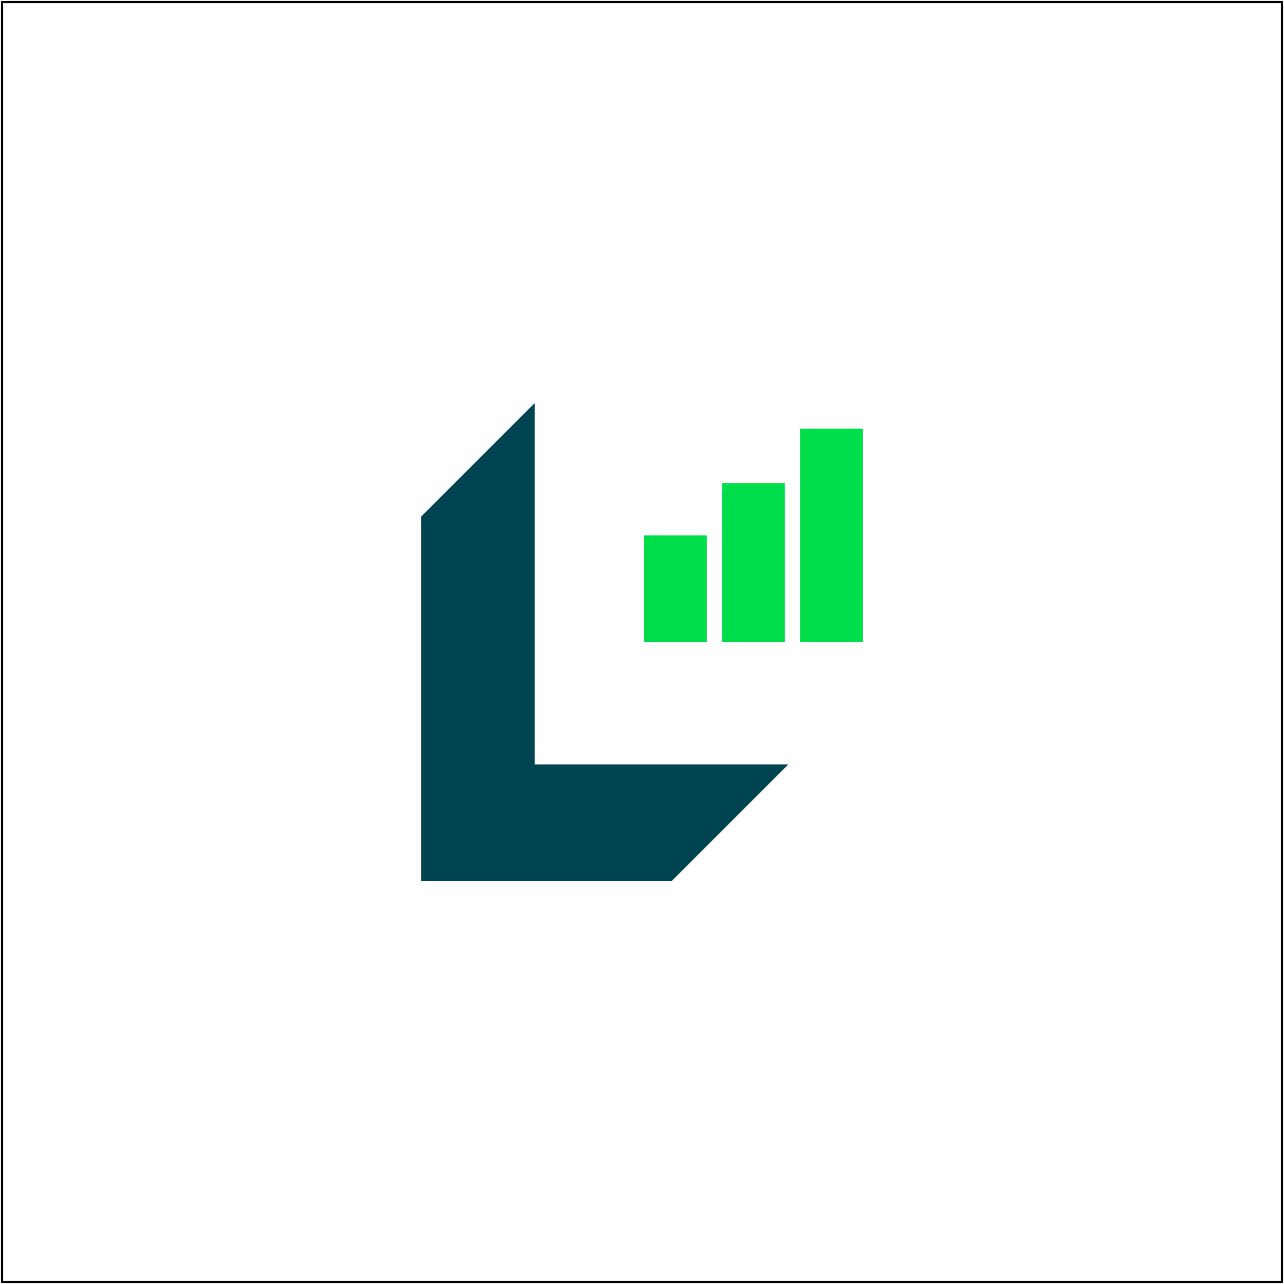 Laxitec Consult